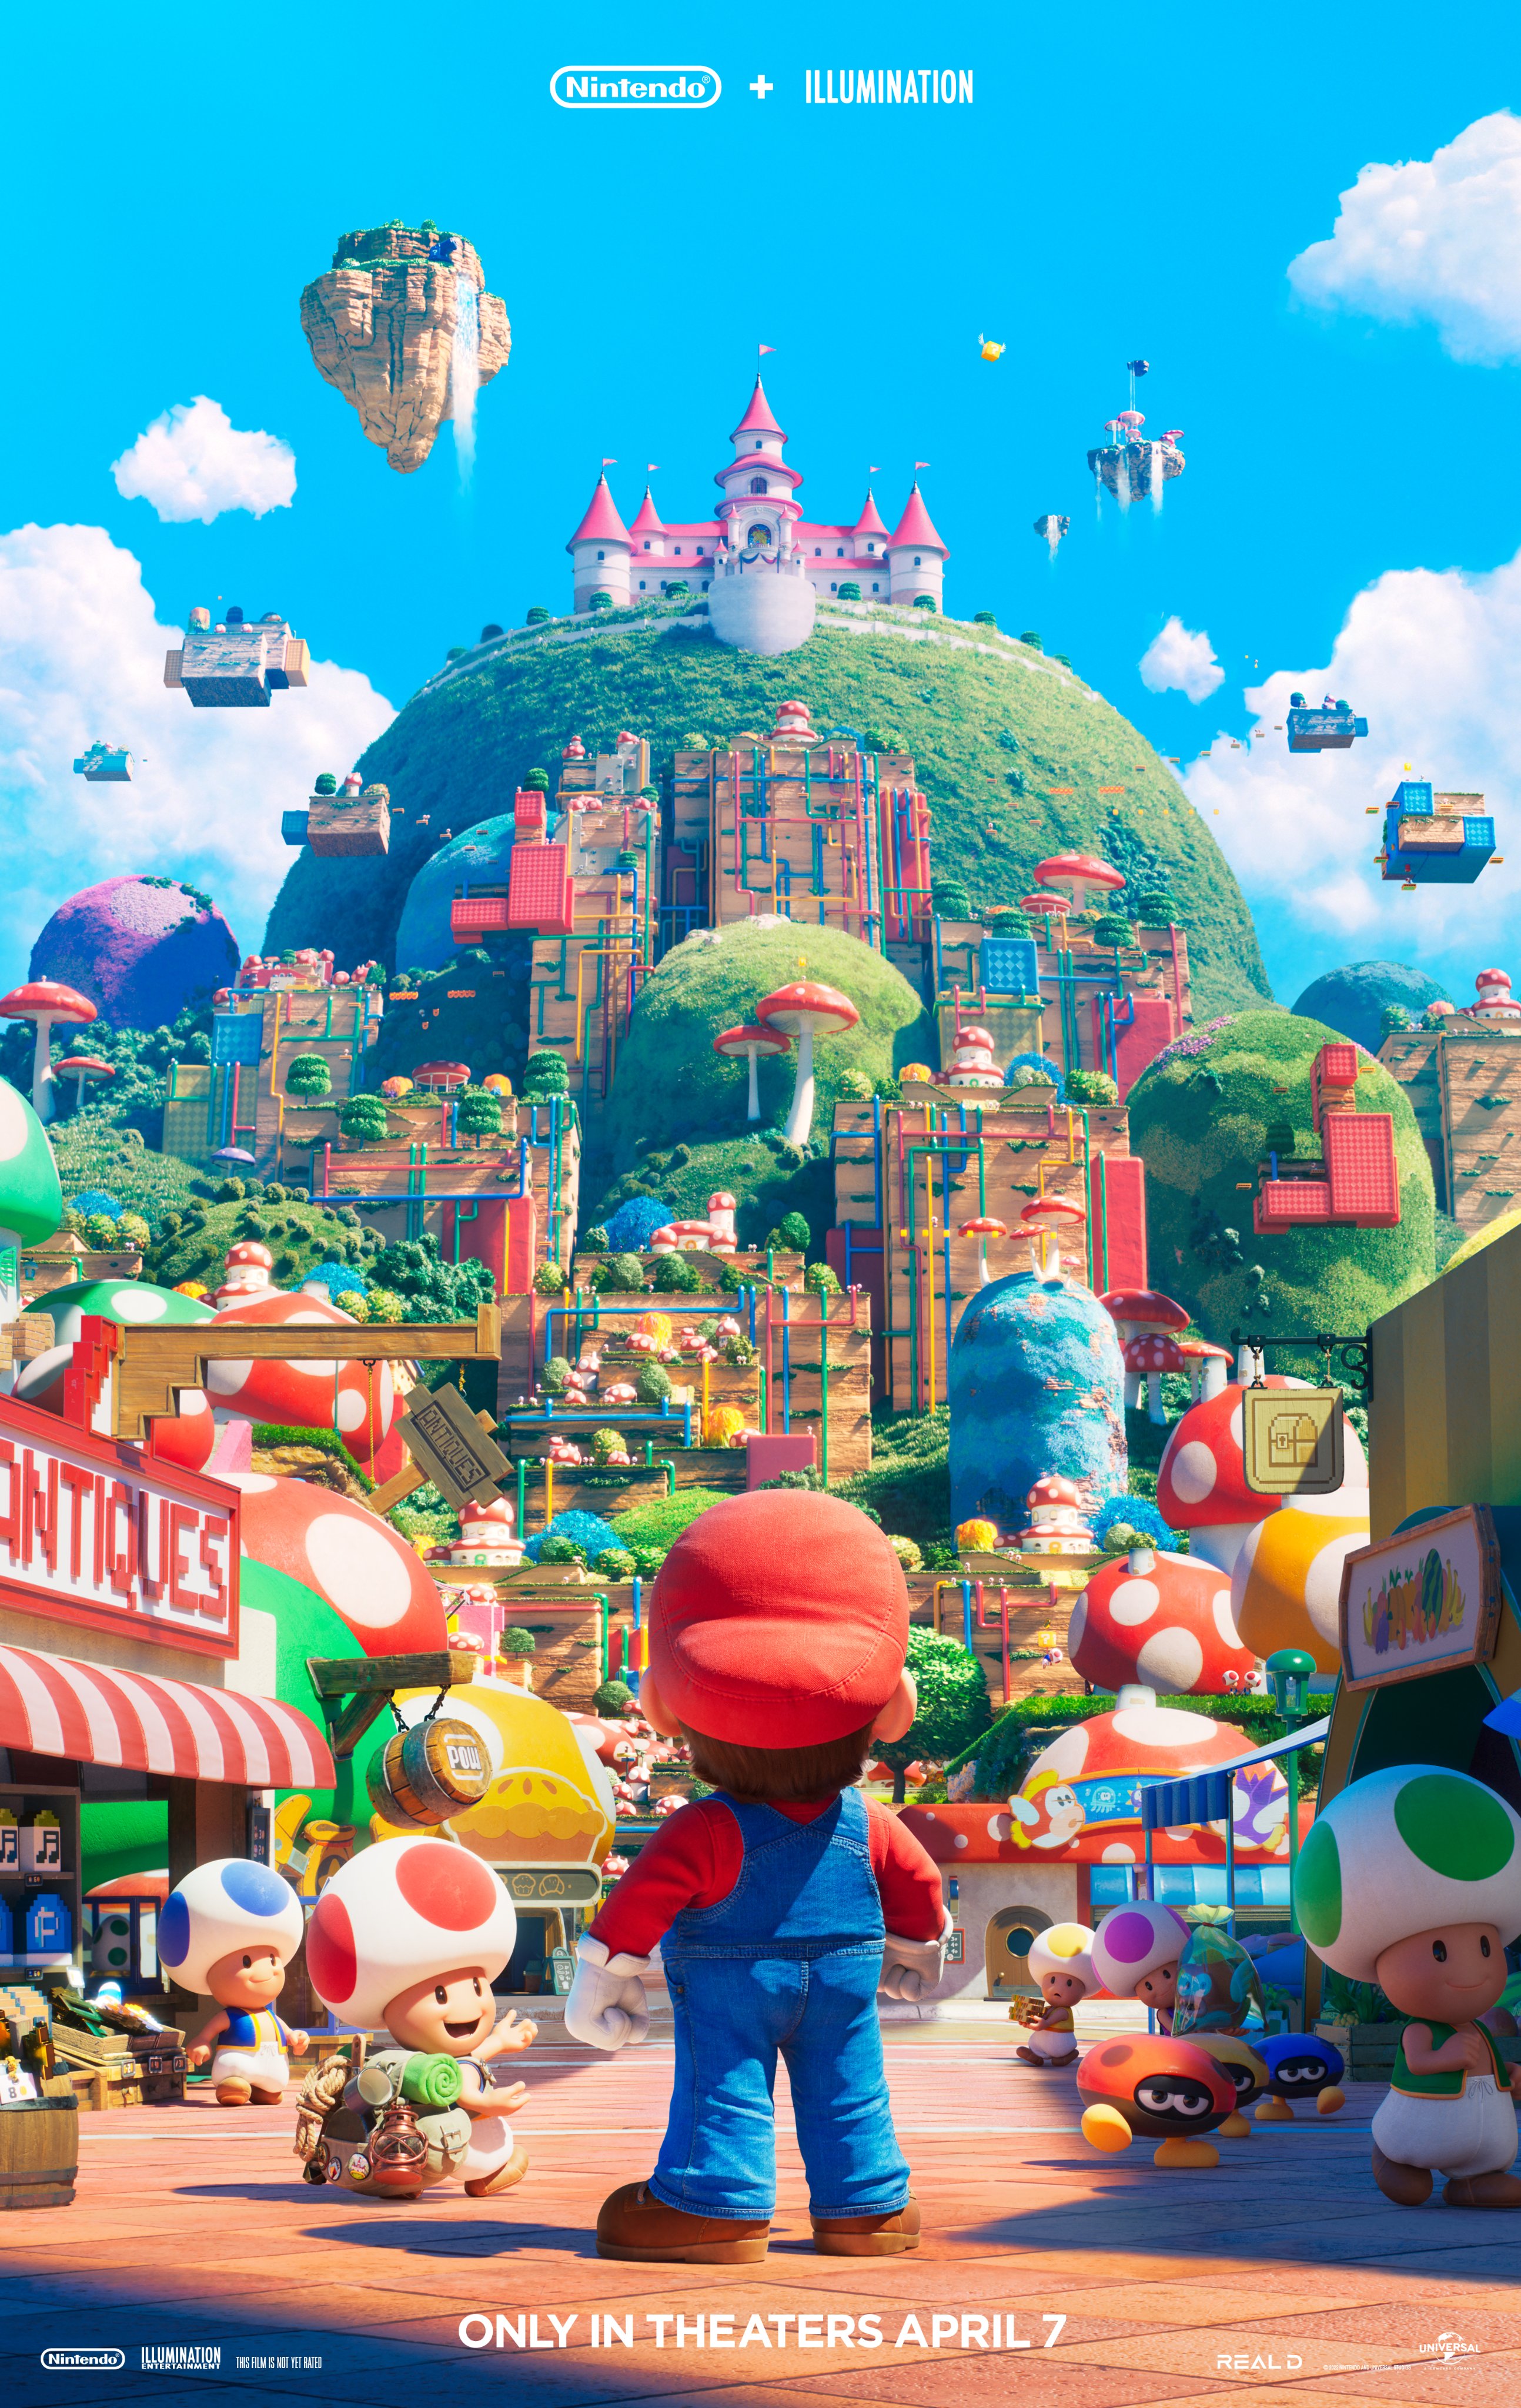 Super Mario World - Wikipedia